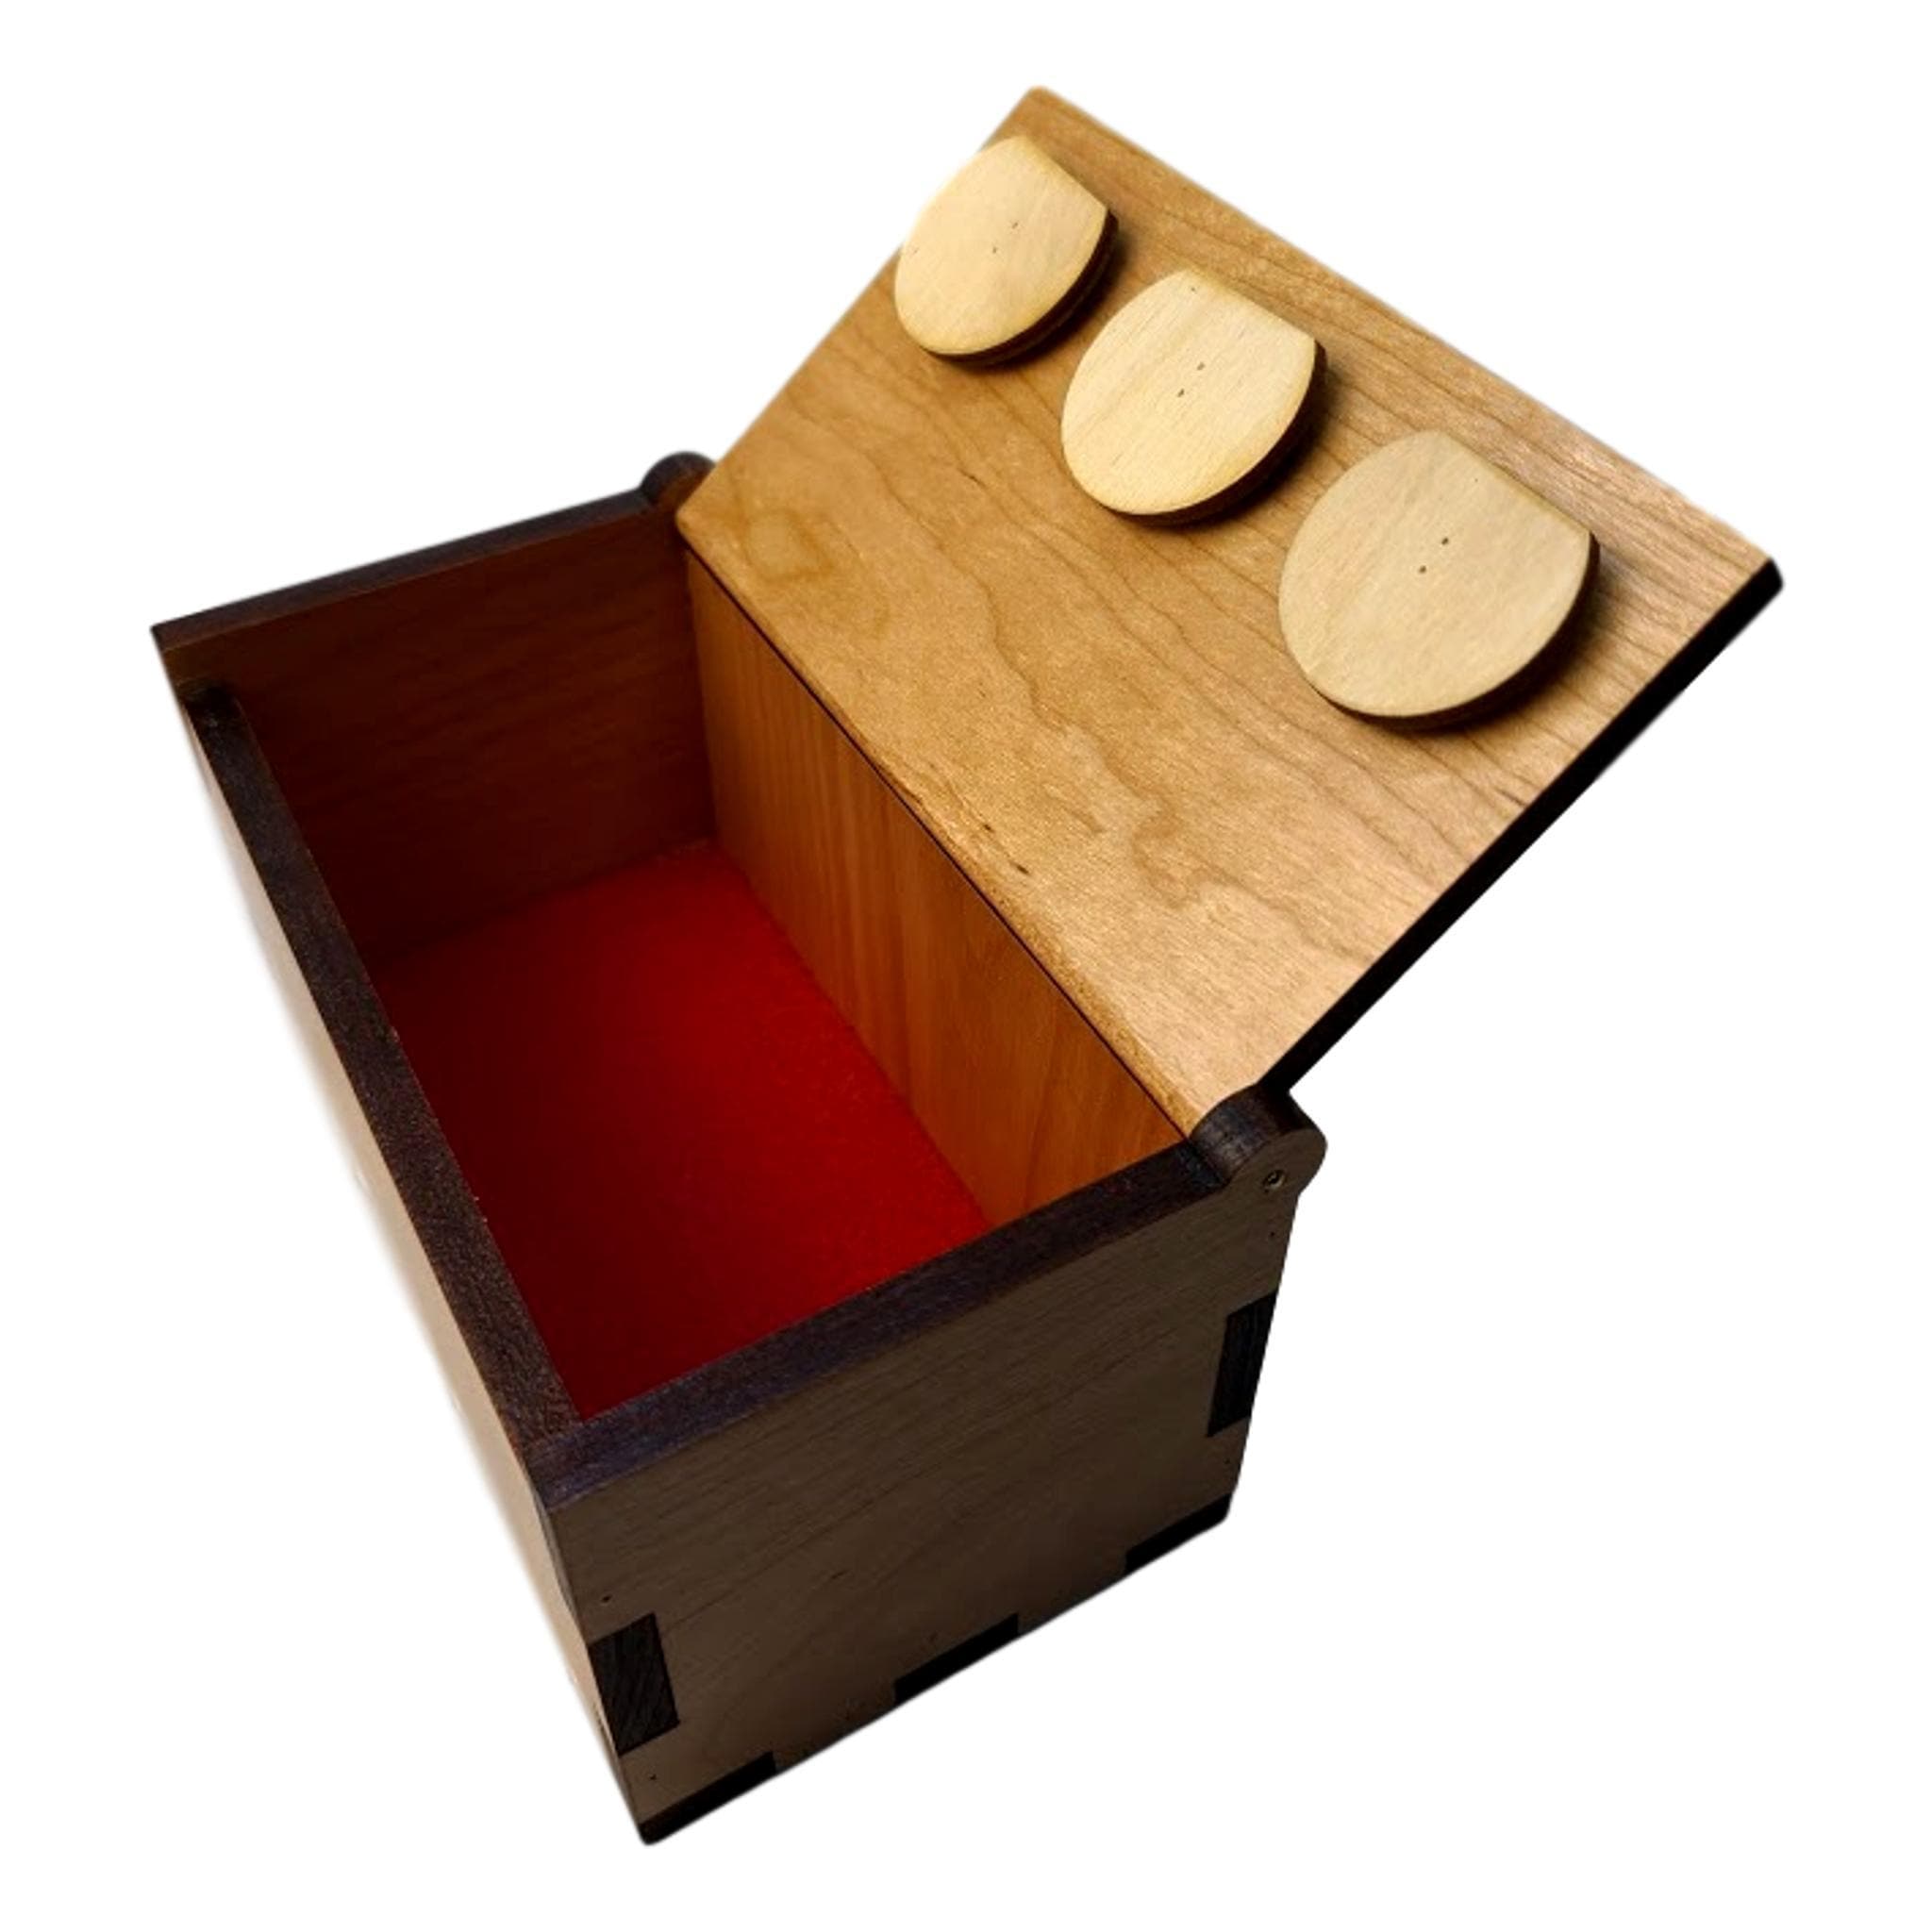 Secret Stash Box Also Known as the Spin Box – Creative Escape Rooms